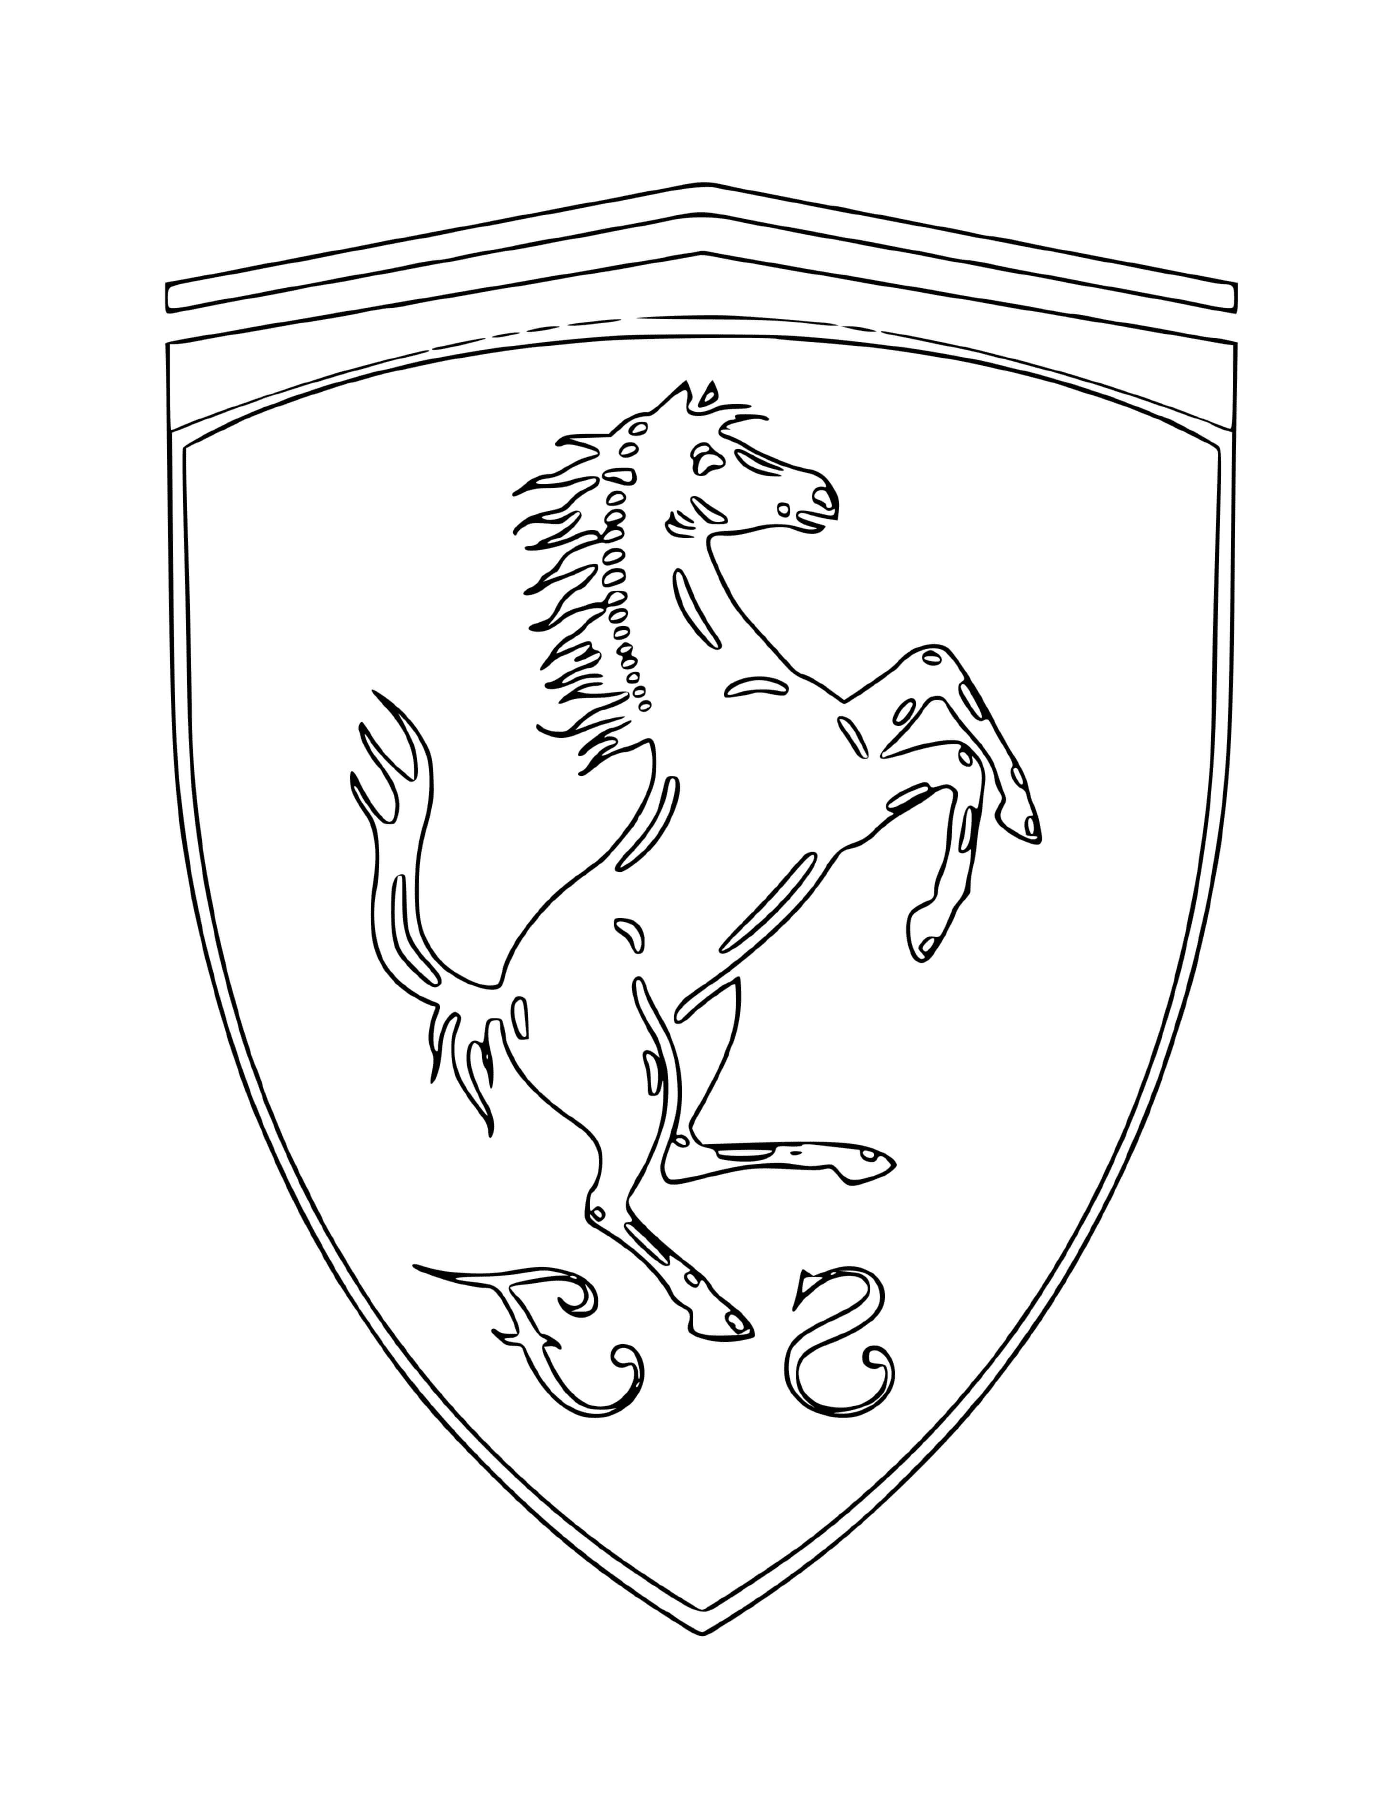  The Ferrari car logo with a horse 